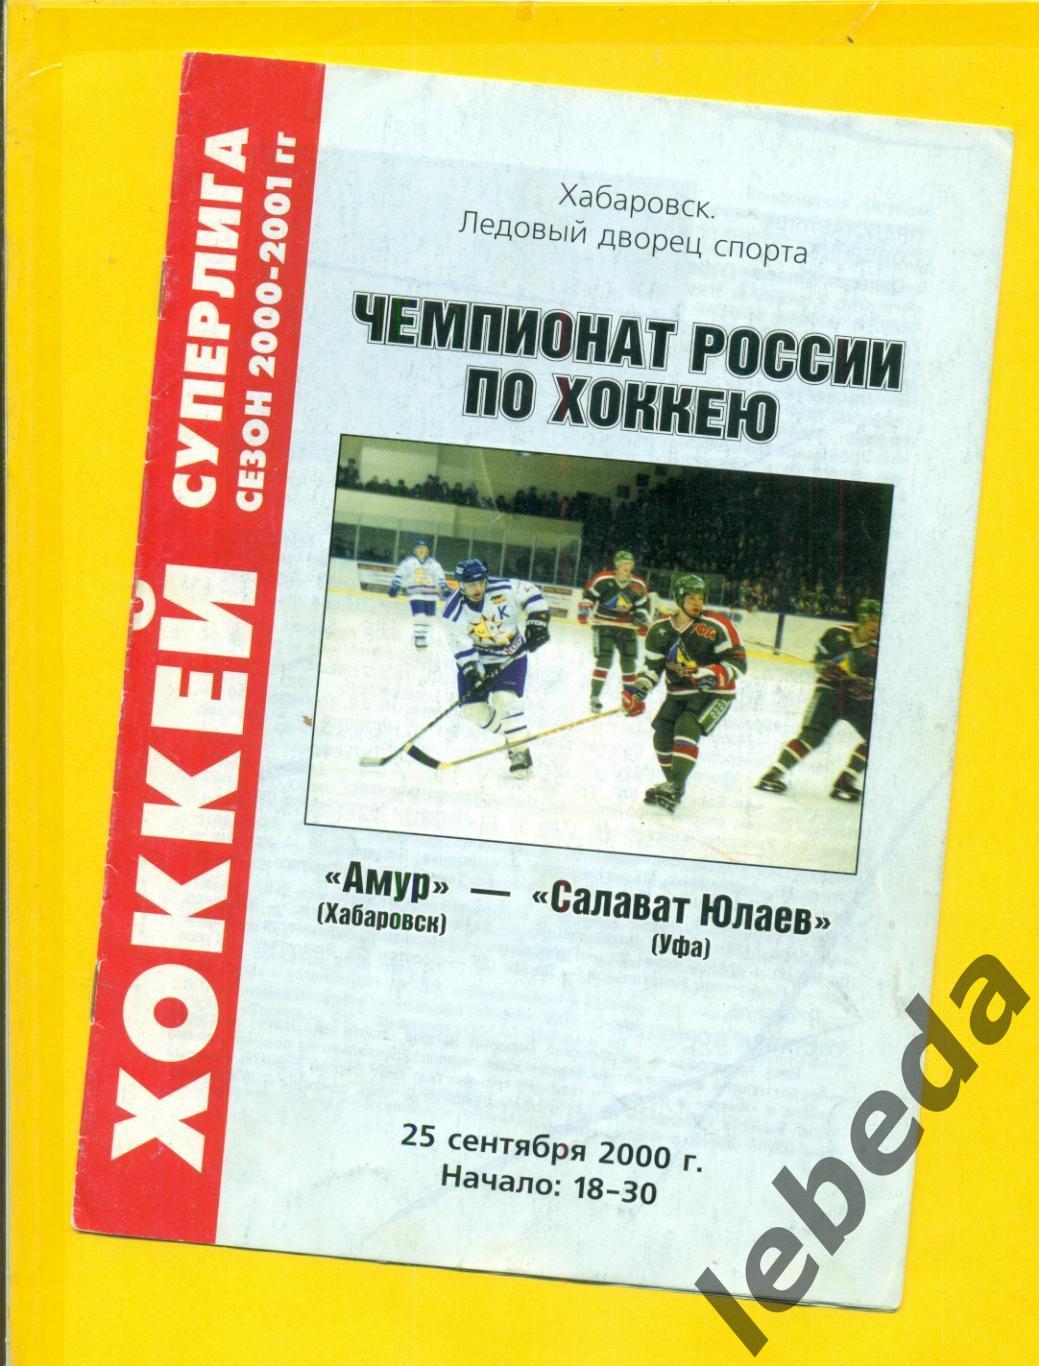 СКА Хабаровск - Салават Юлаев Уфа - 2000 / 2001 г. (25.09.2000.)